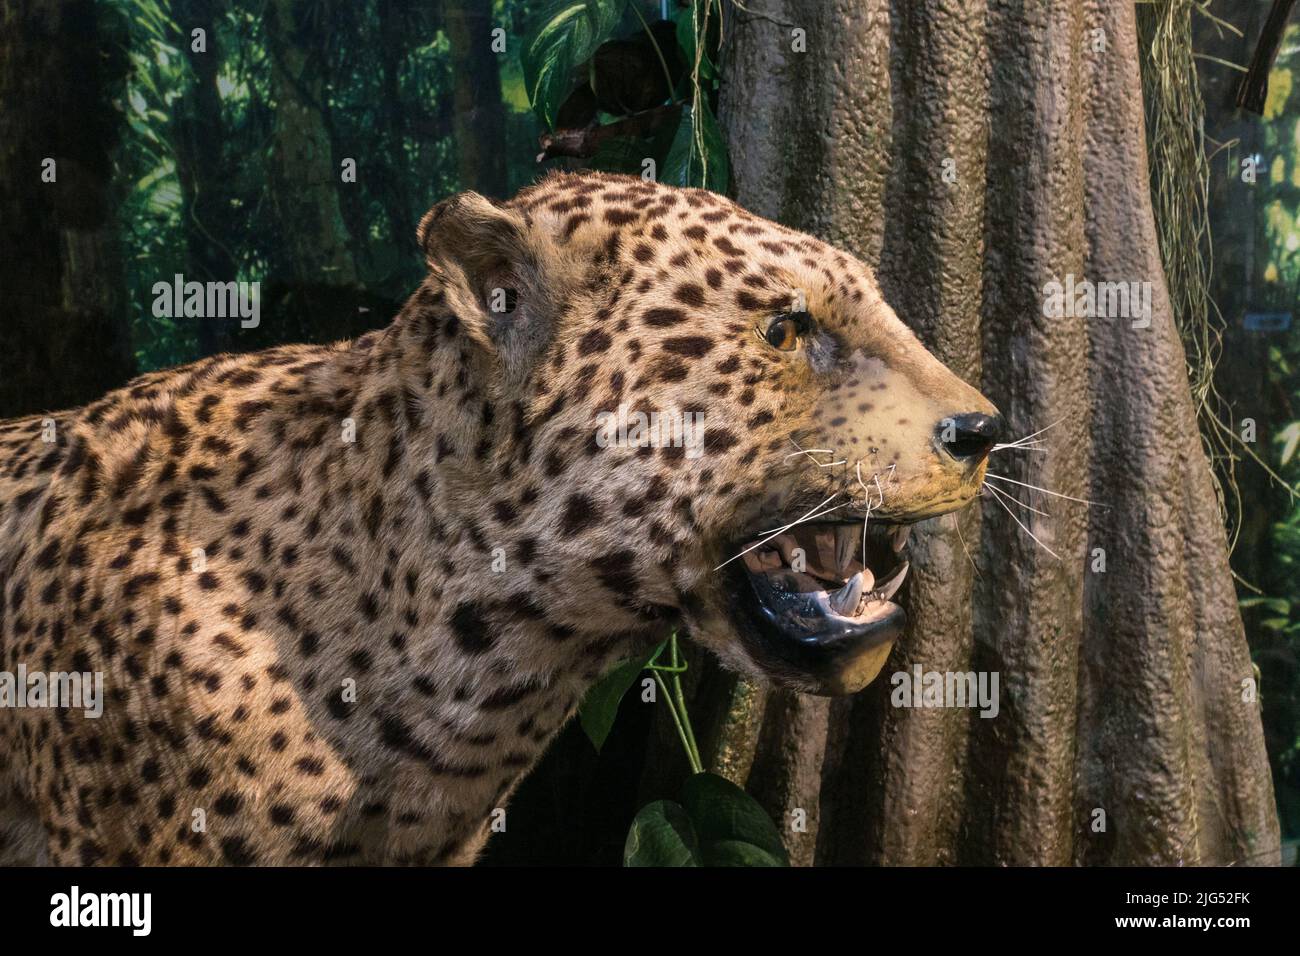 Stuffed jaguar on display in the UK. Stock Photo